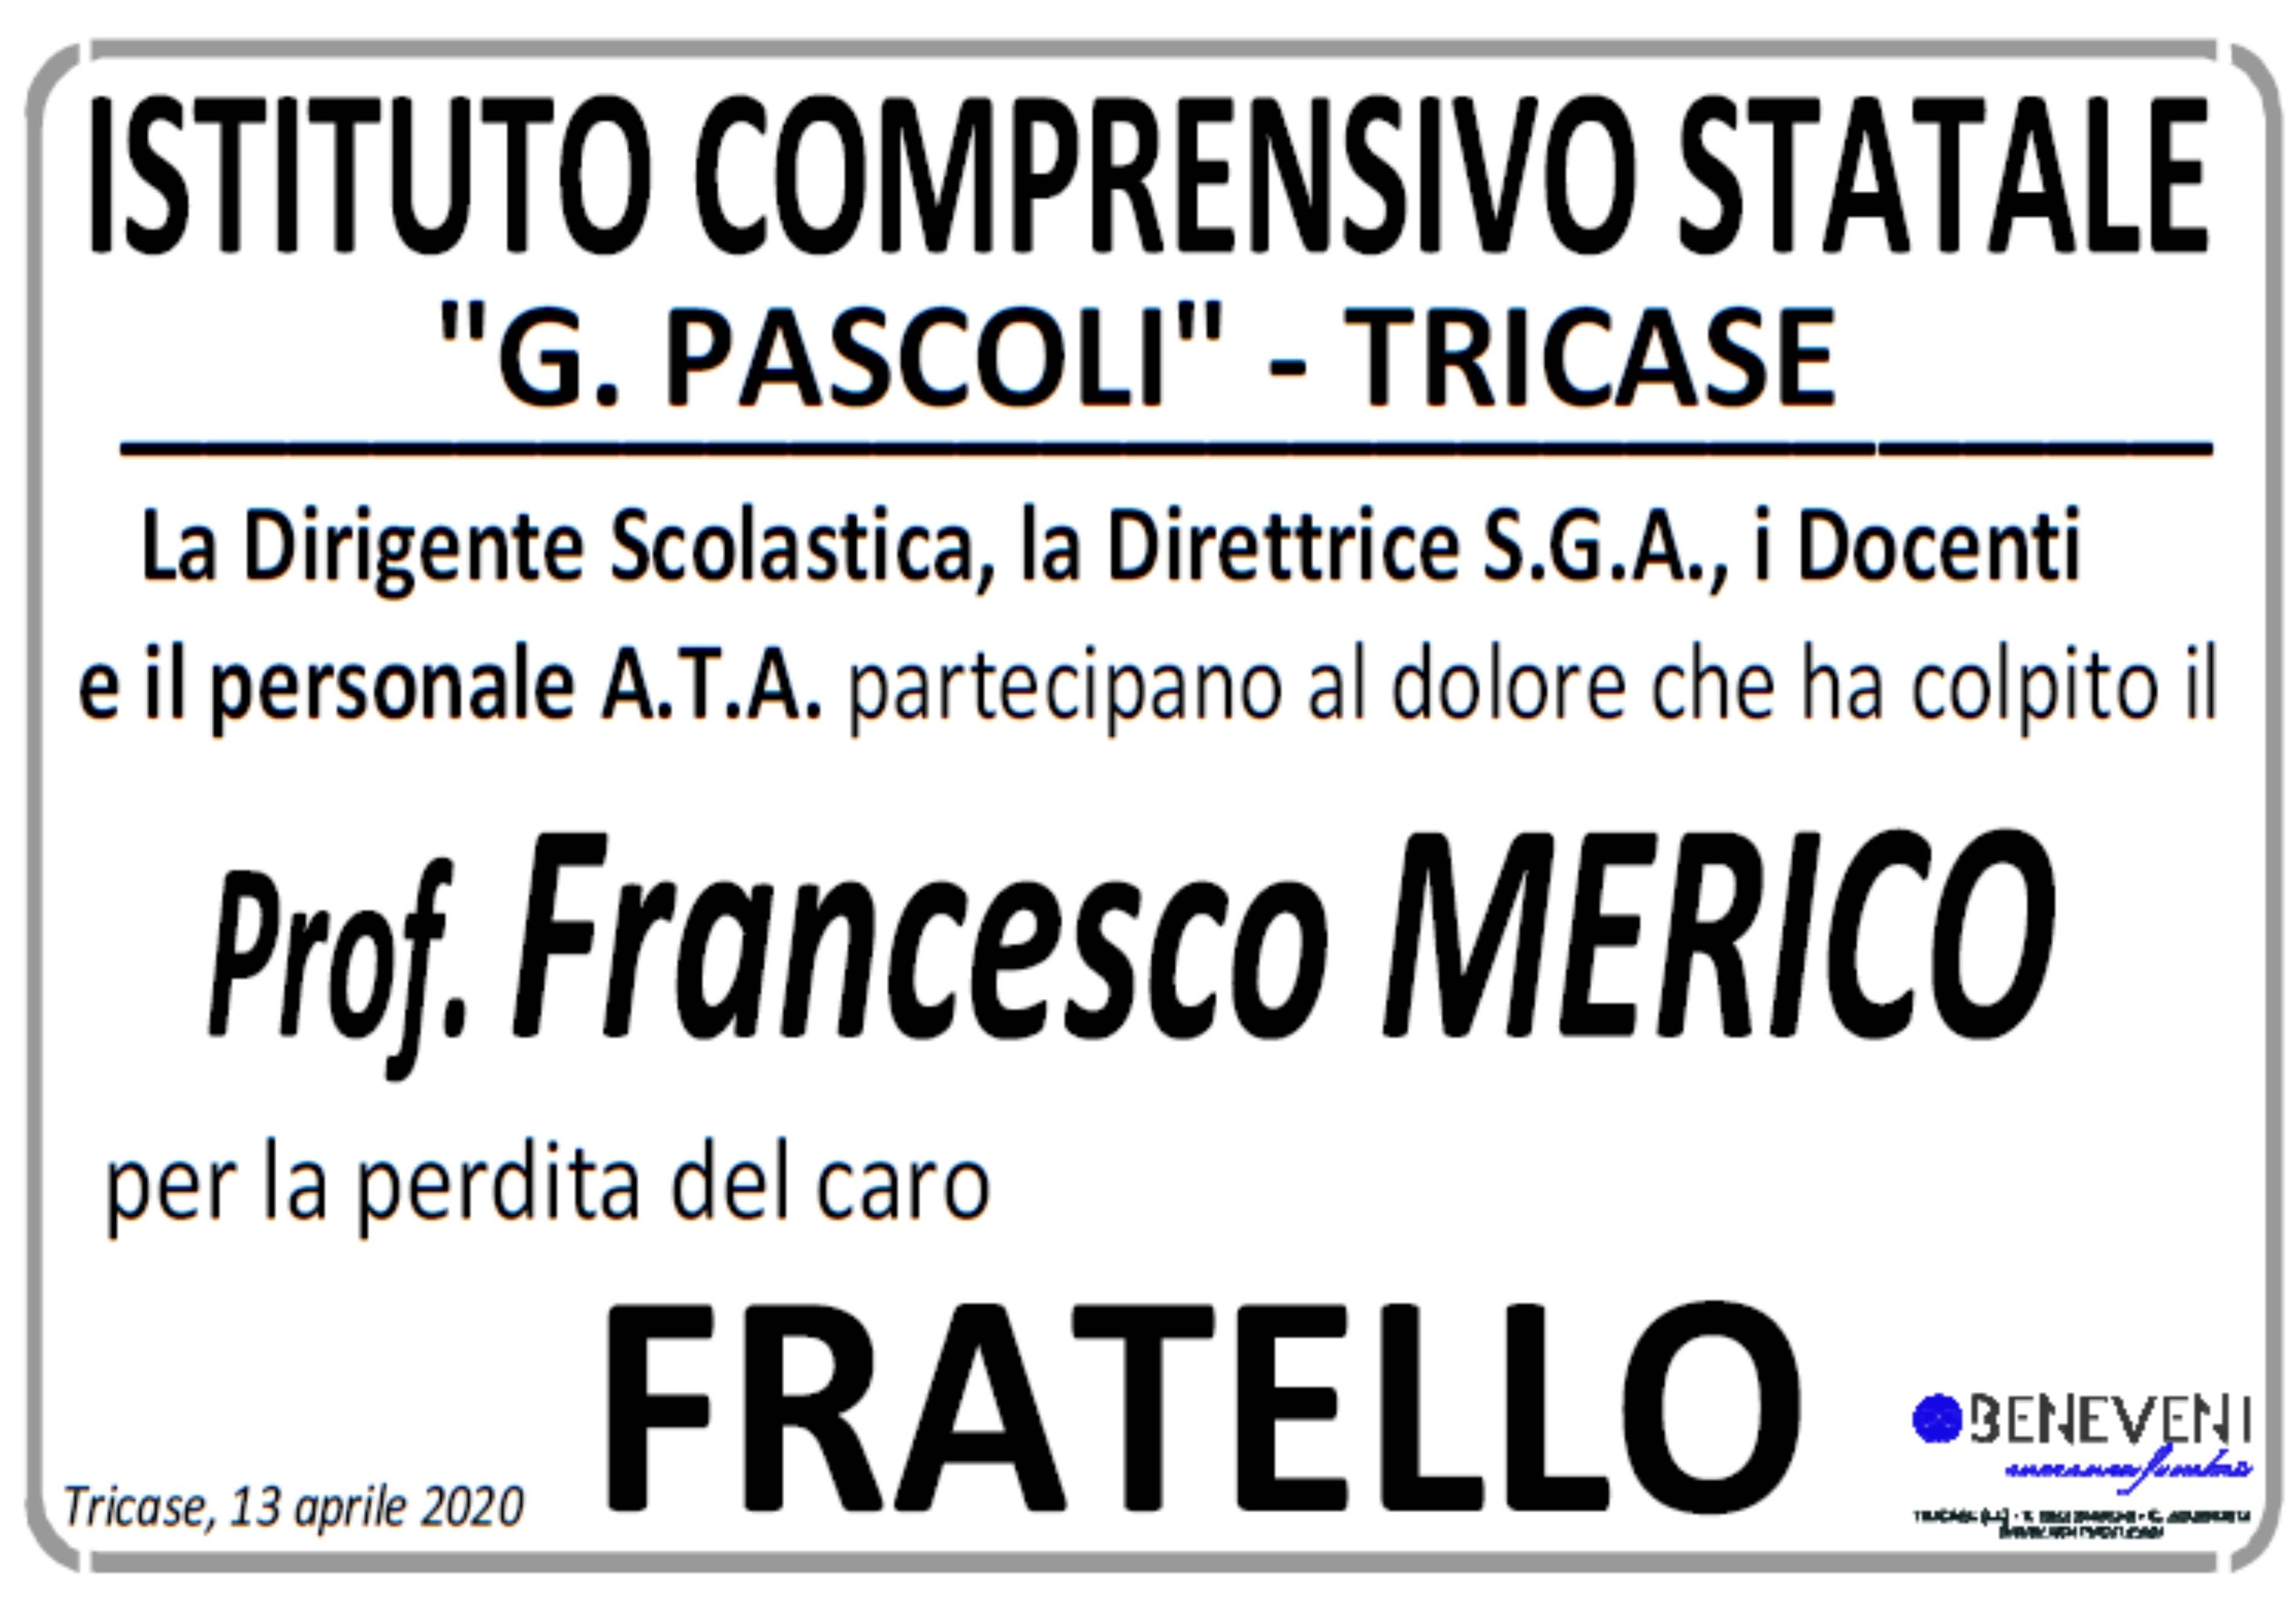 Istituto Comprensivo Statale "G. Pascoli" - Tricase